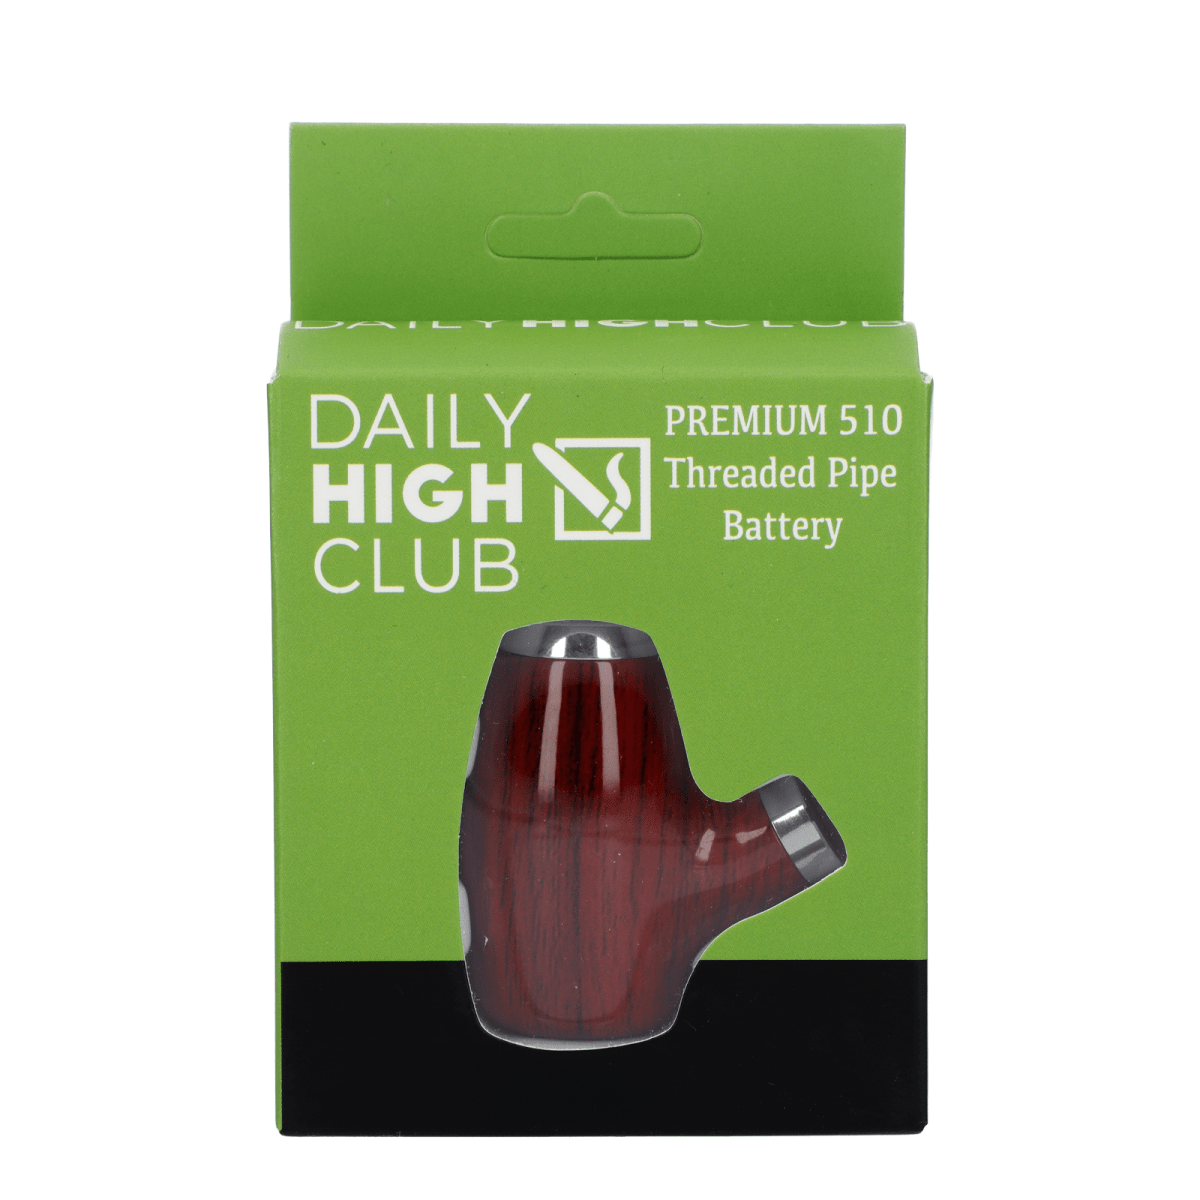 Daily High Club Gold Roach Clip